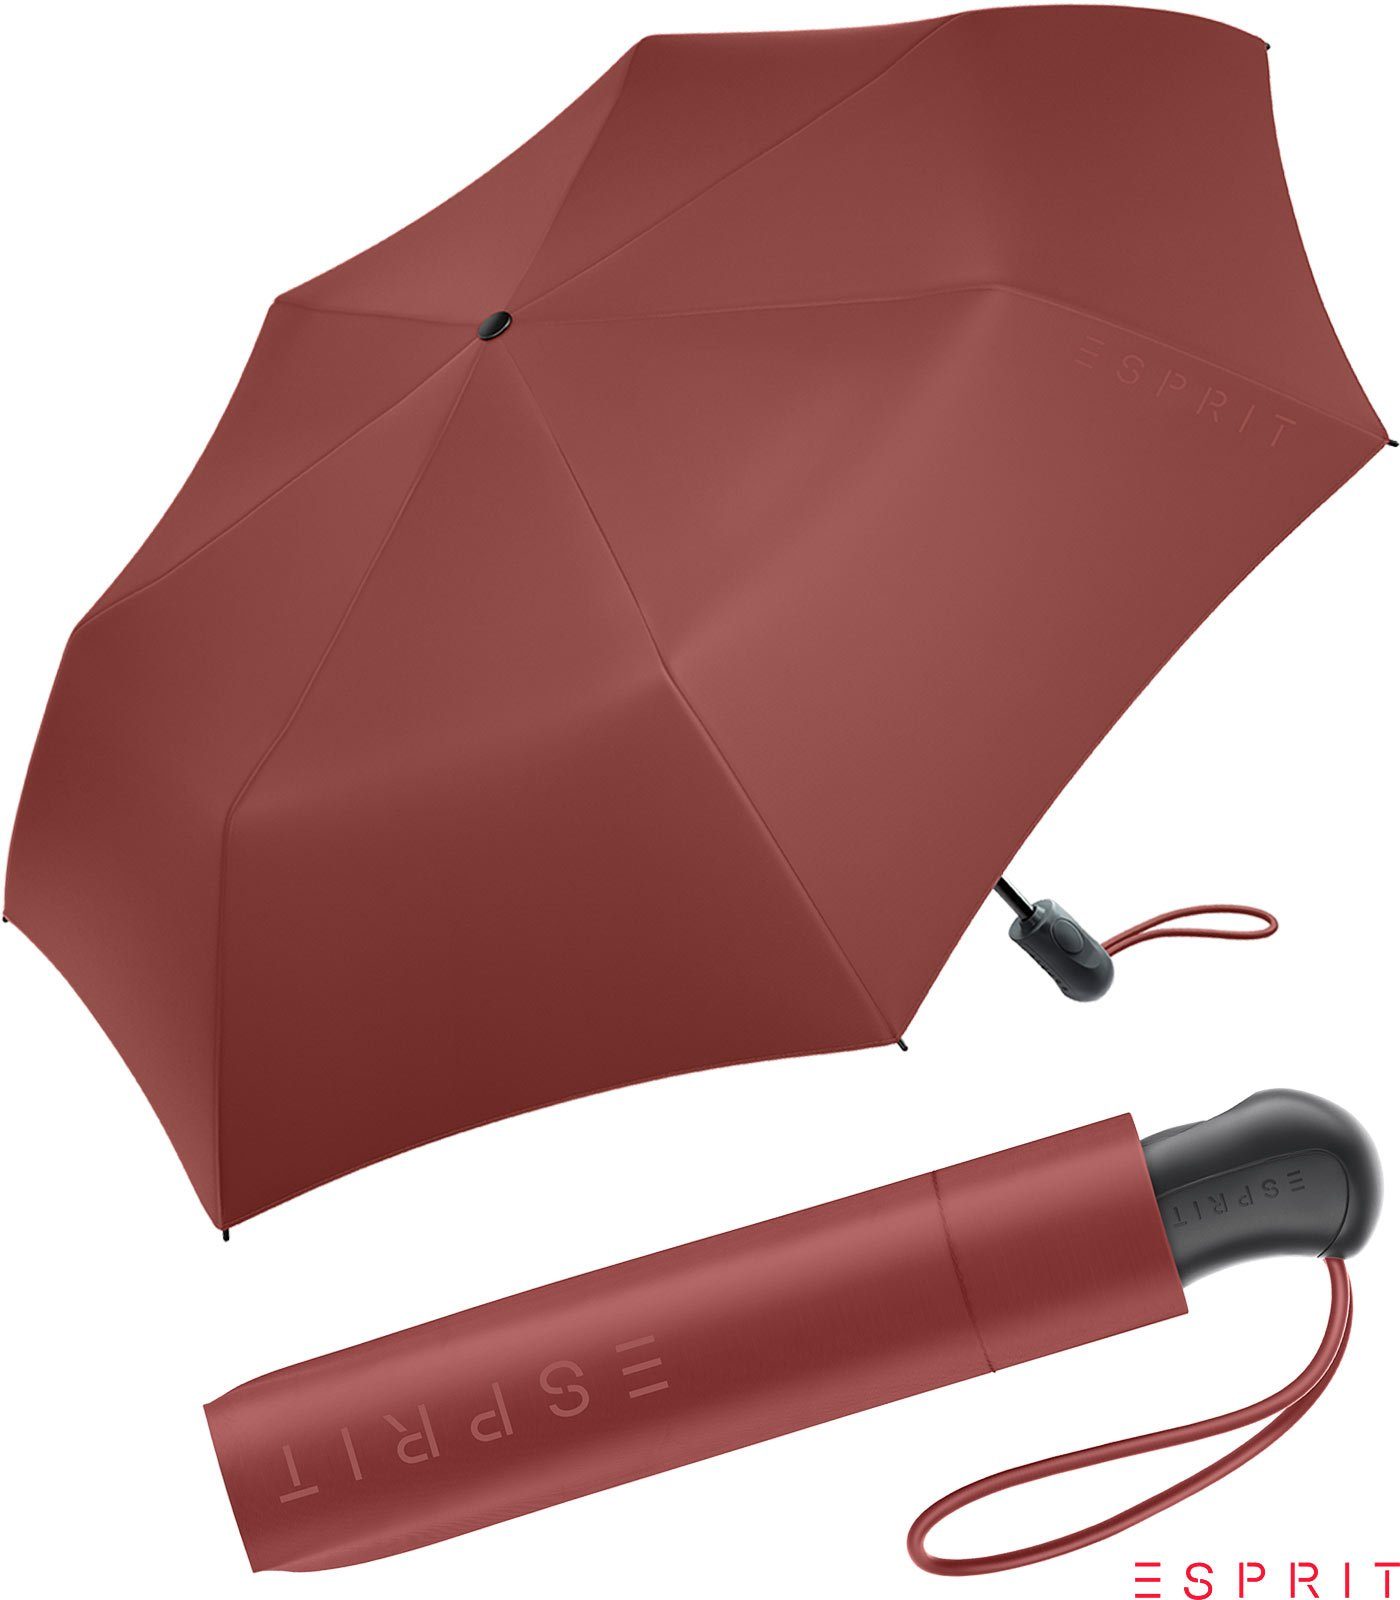 Automatik russet stabil, Easymatic 2022 praktisch, braun Damen - Light in den brown, neuen Taschenregenschirm HW Trendfarben Auf-Zu Esprit